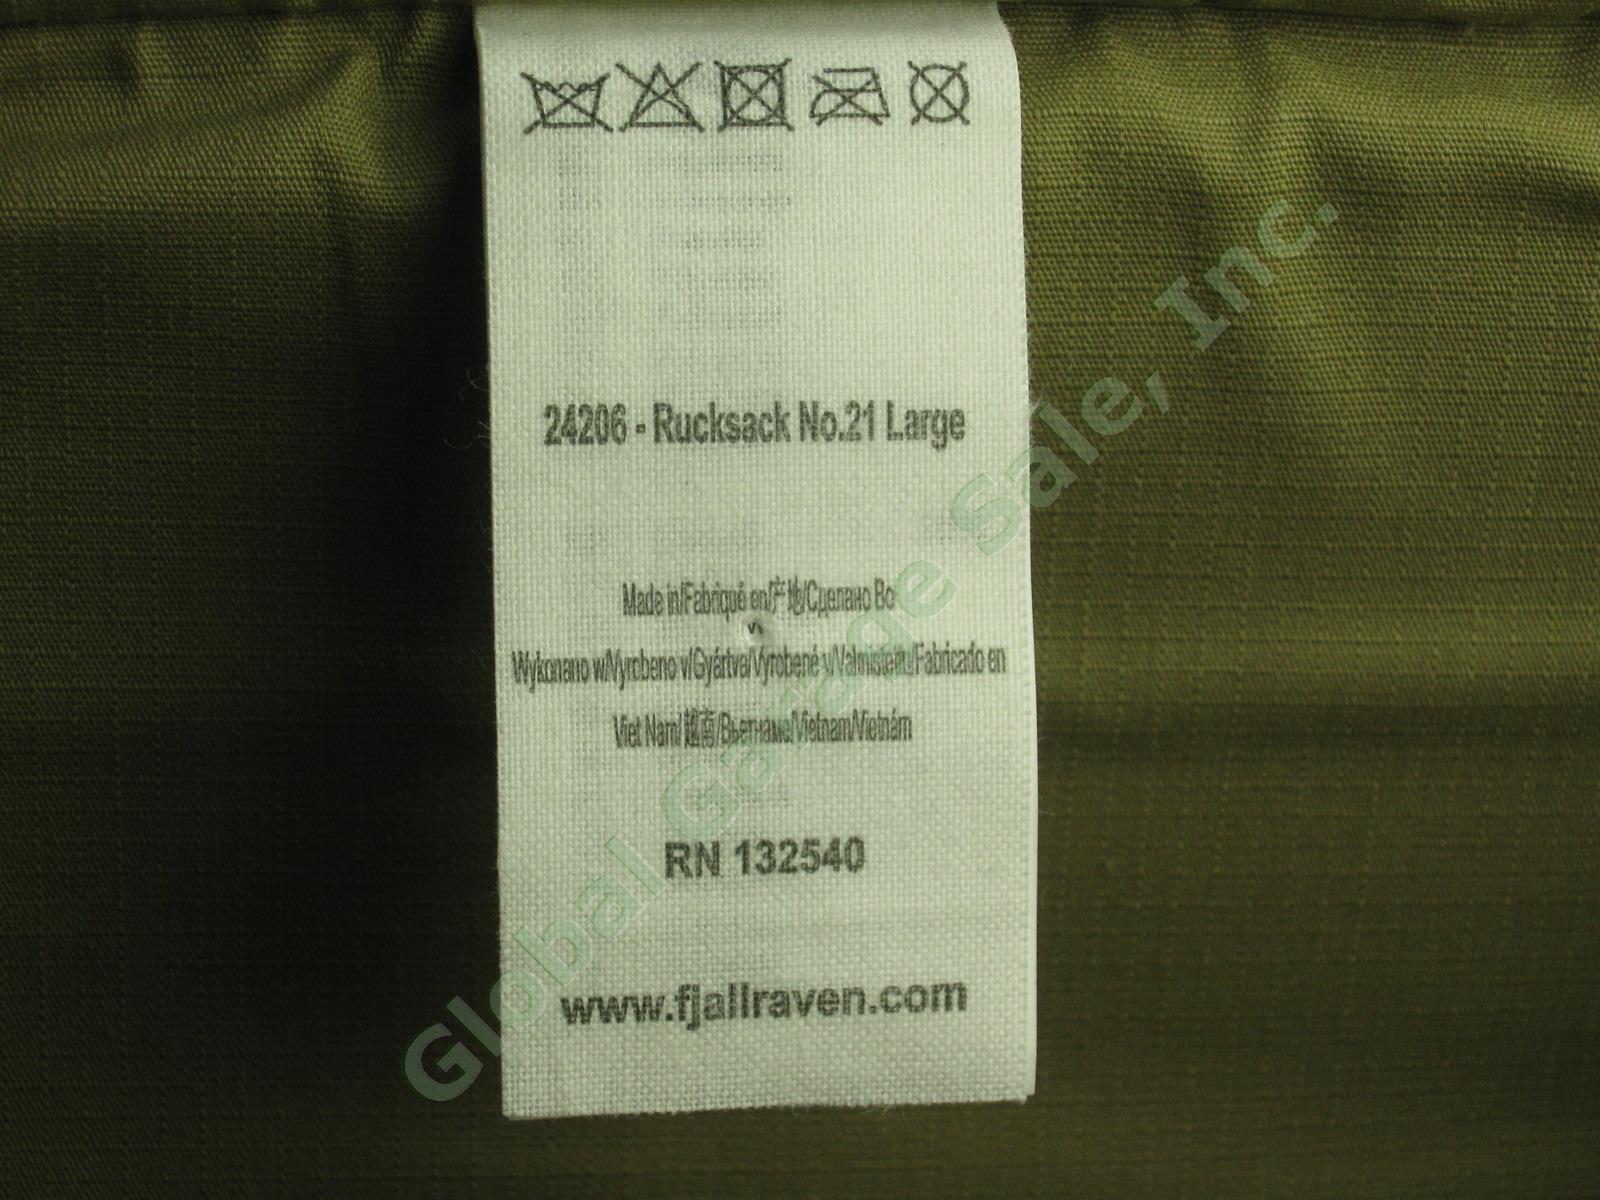 Fjallraven Rucksack No 21 Large Daypack Backpack 24206 Sand Color G-1000 VG COND 9